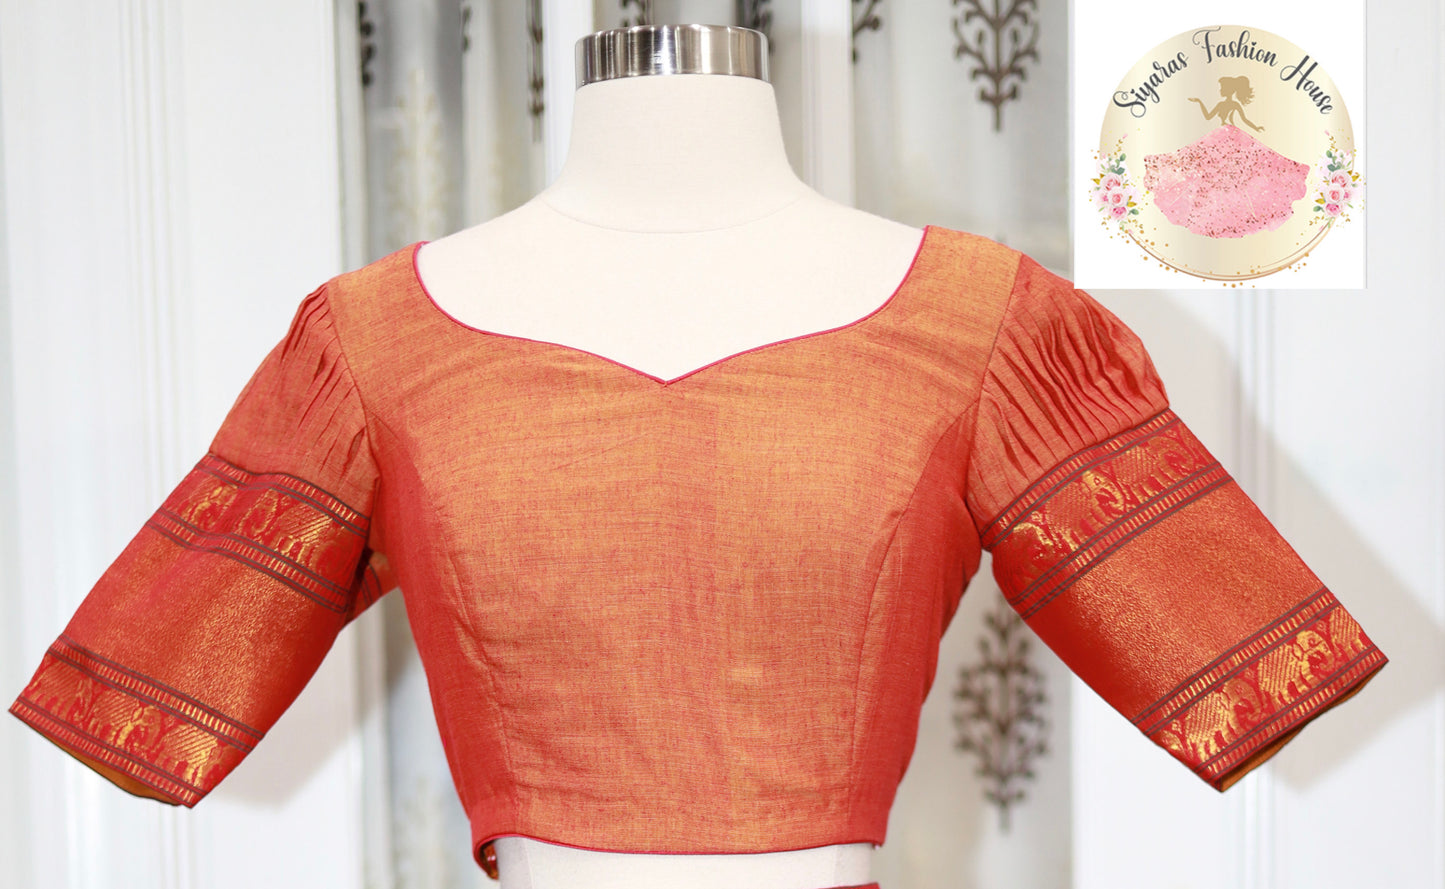 Traditional Narayanpet cotton teens half saree/langa voni with hip belt same fabric